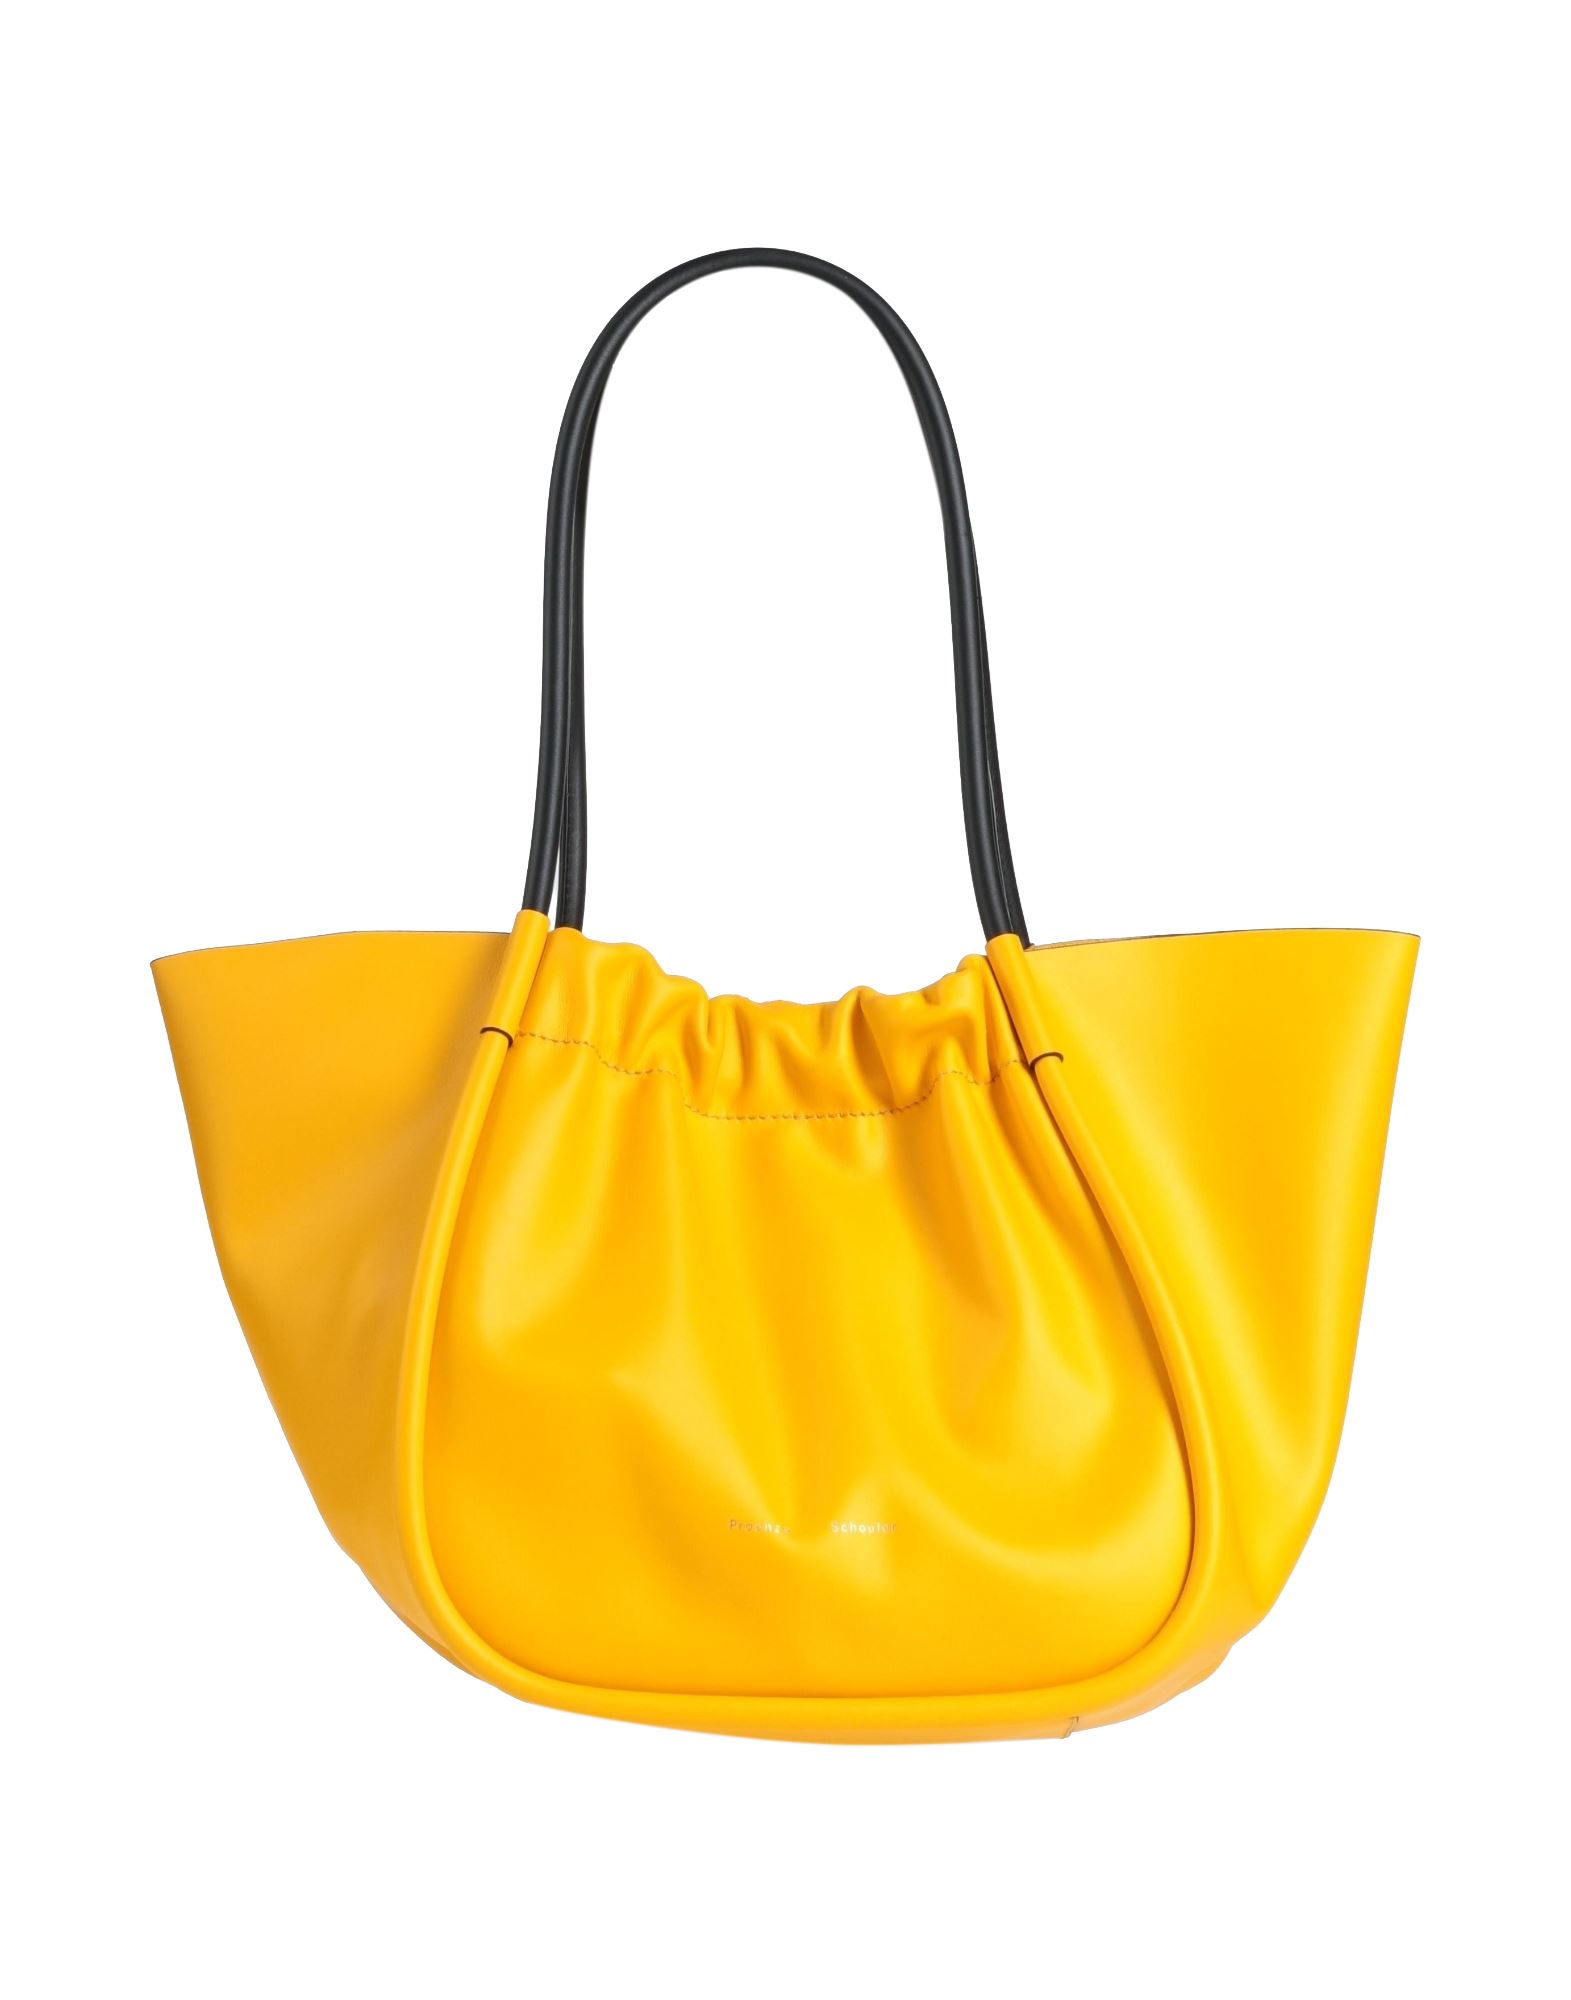 Proenza Schouler Handbags In Yellow